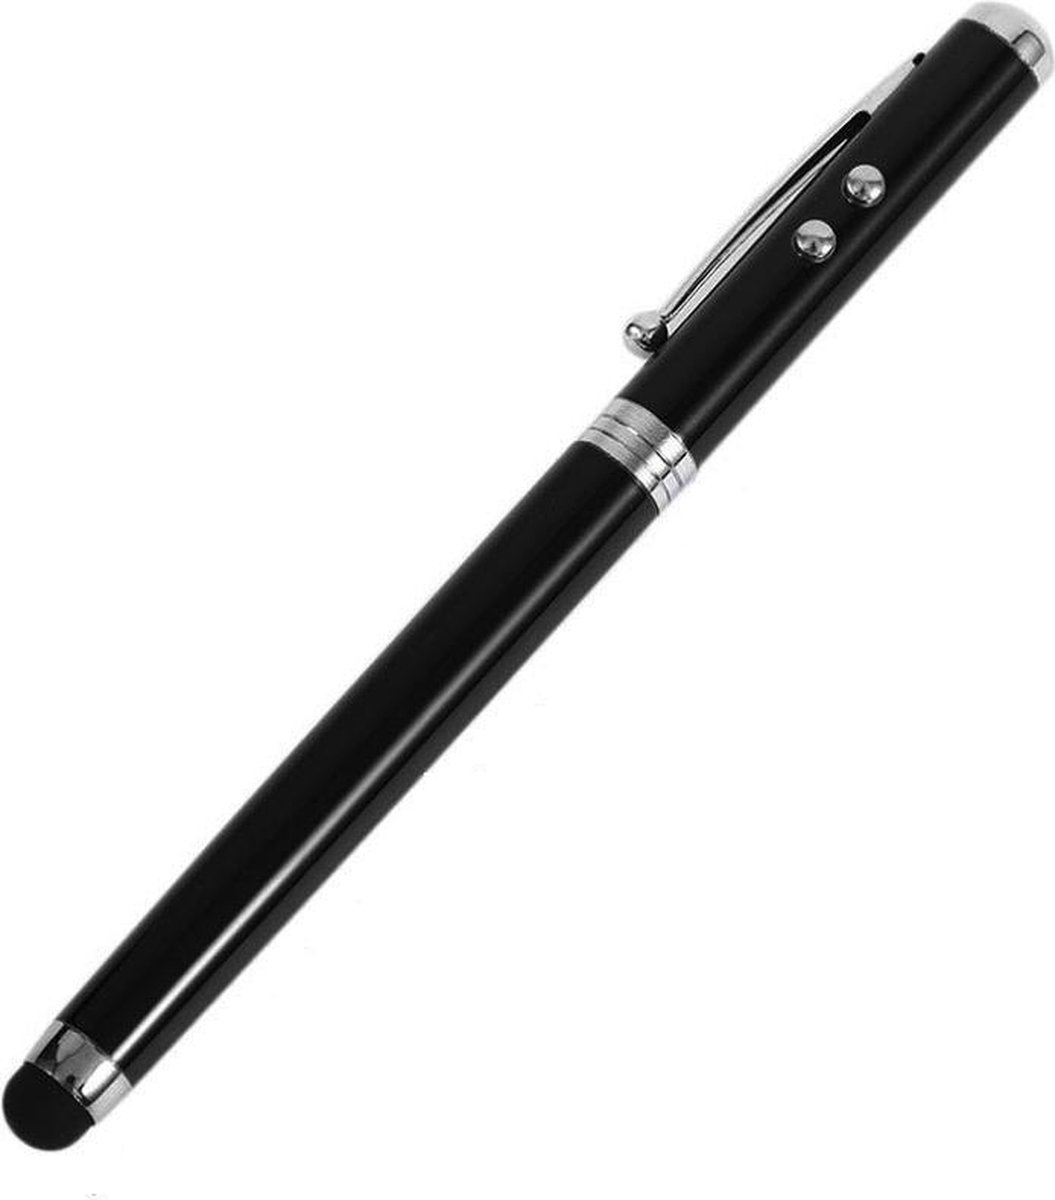 Laserpen - Stylus Pen - Presenter - Balpen - 4 in 1